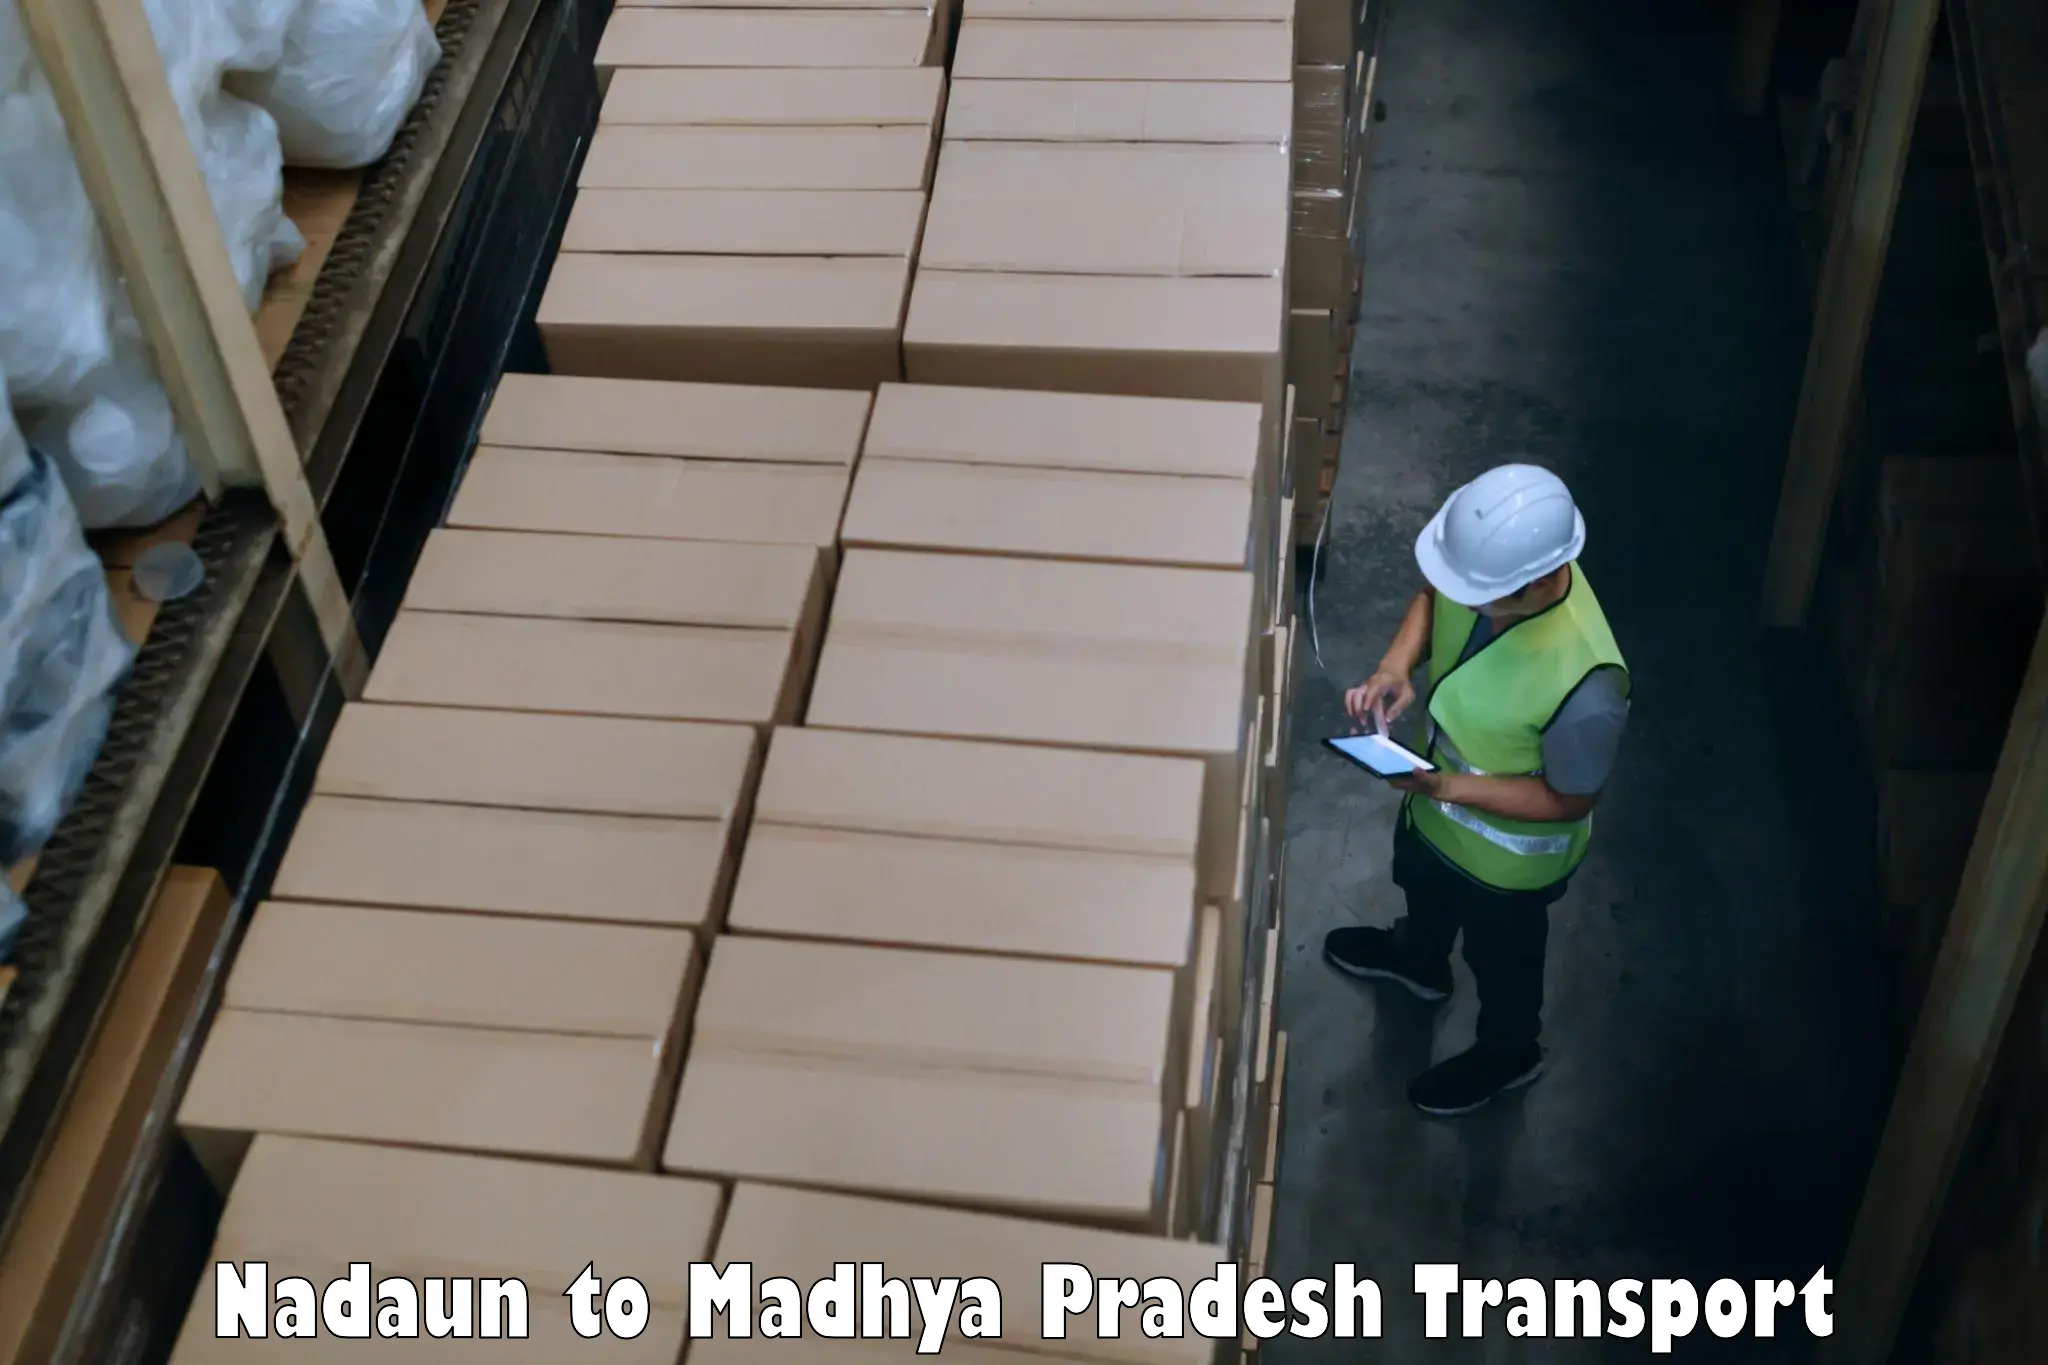 Sending bike to another city Nadaun to Madhya Pradesh